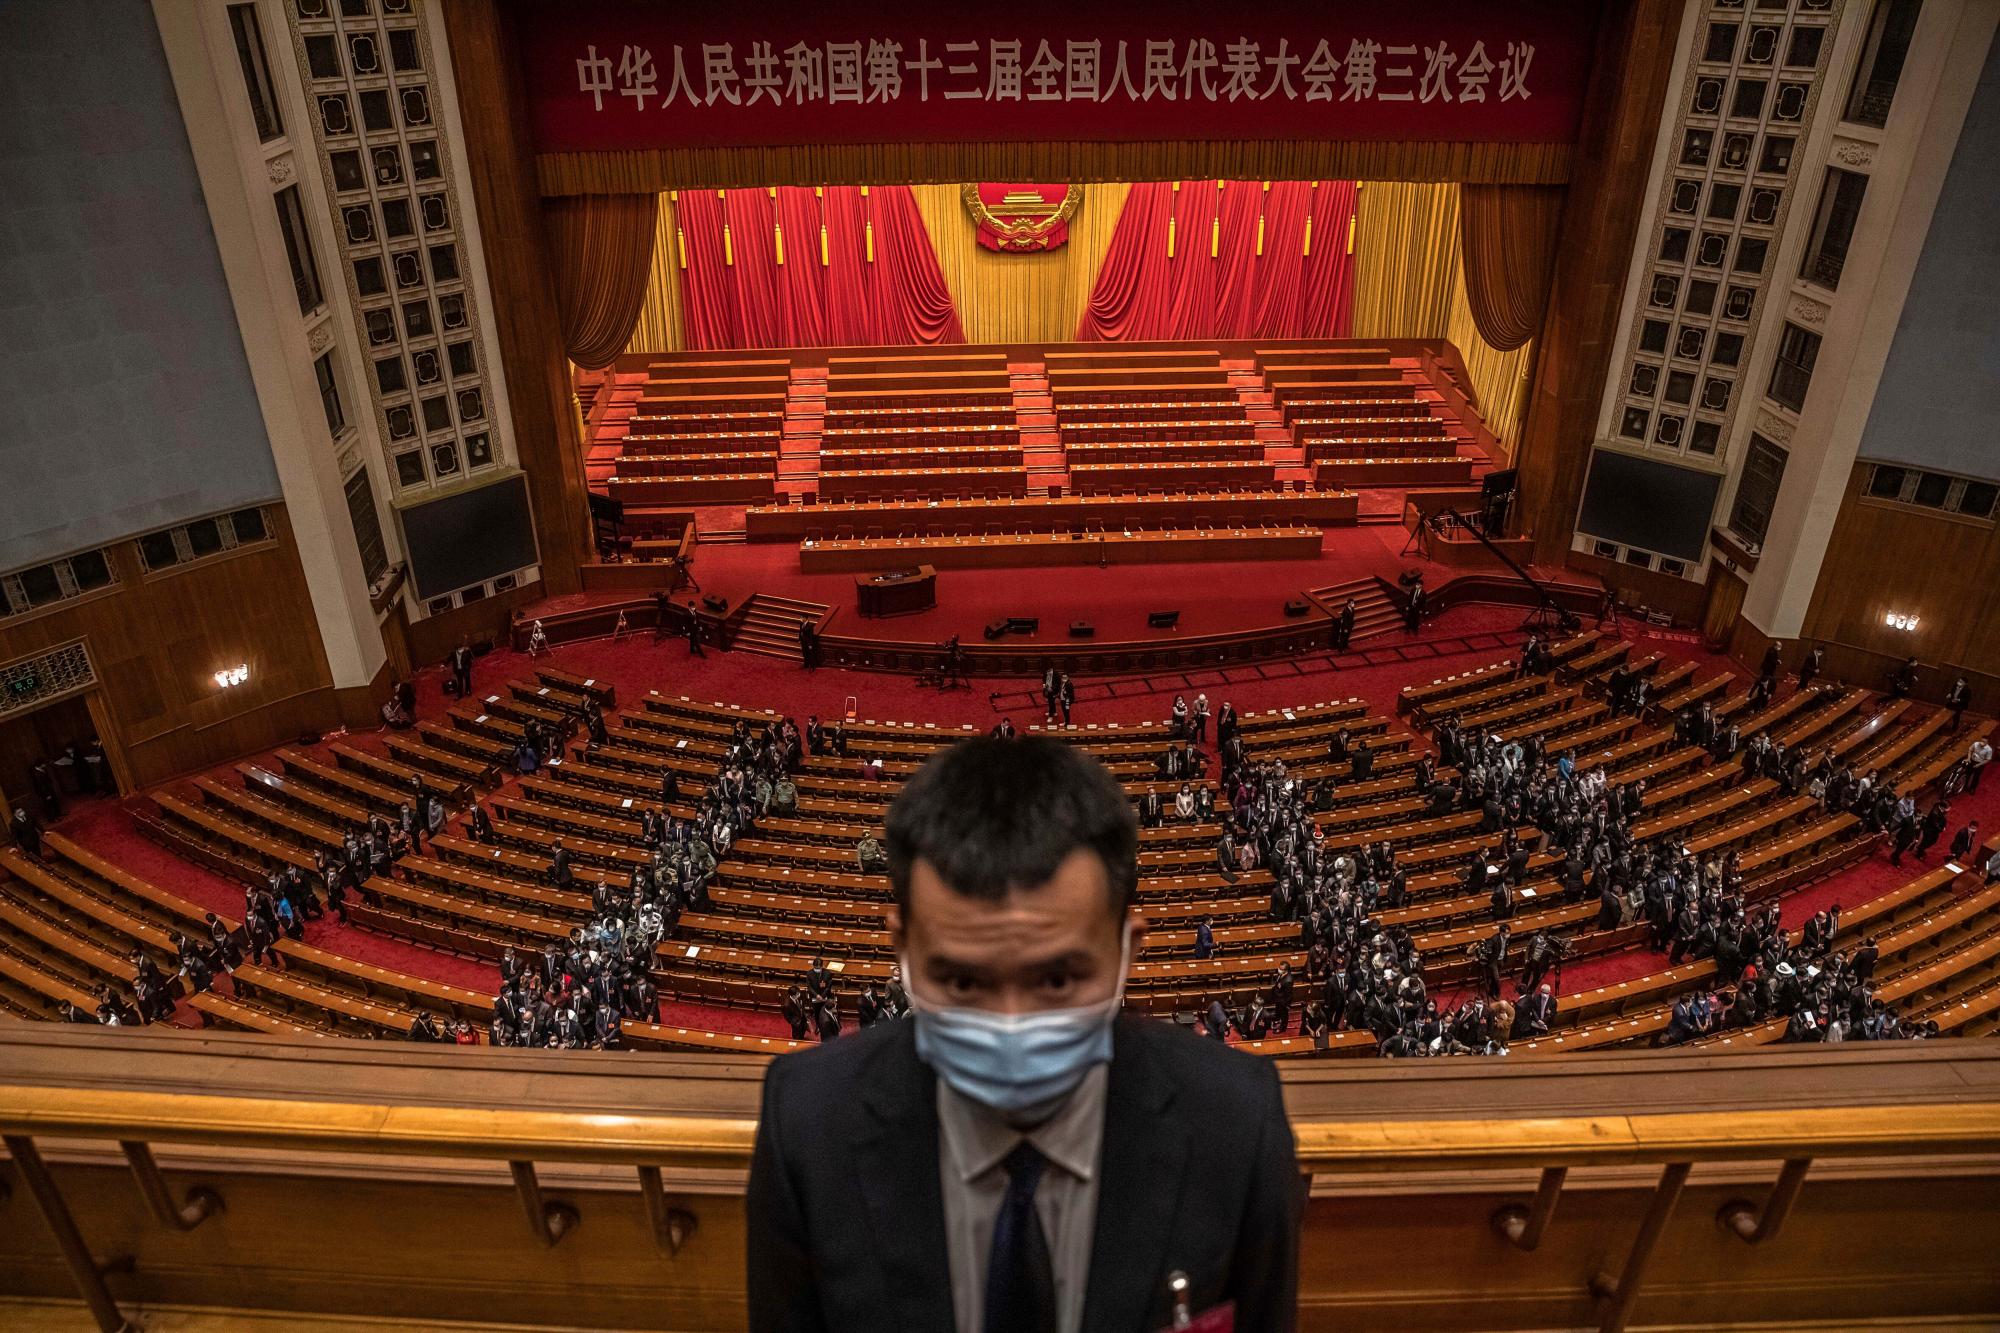 Un oficial de seguridad que usa una máscara protectora hace guardia mientras los delegados se van después de la segunda sesión plenaria del Congreso Nacional del Pueblo (APN) de China en el Gran Salón del Pueblo en Beijing, el lunes 25 de mayo de 2020. (Roman Pilipey / Pool Photo vía AP)